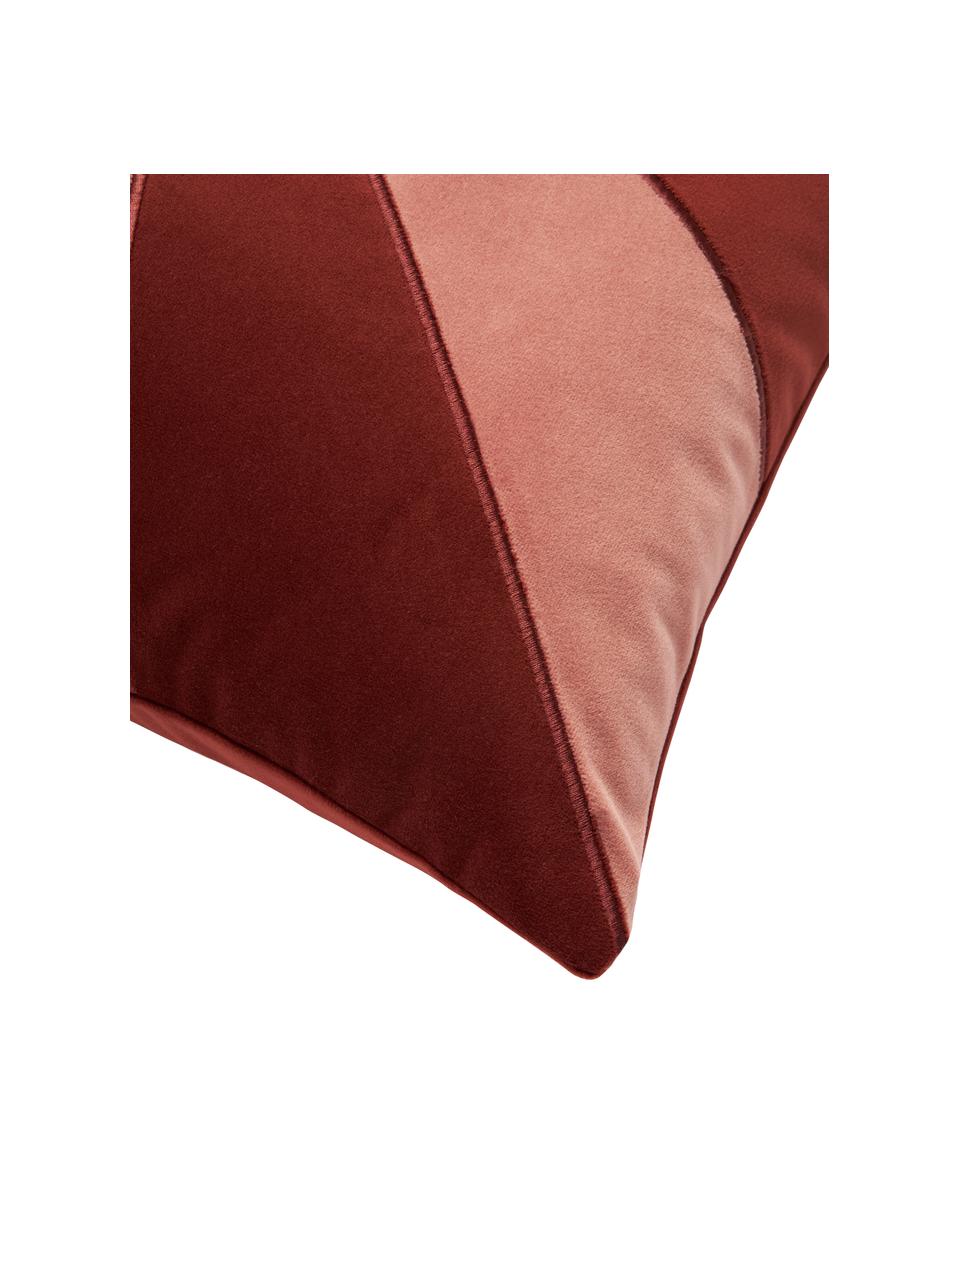 Poszewka na poduszkę z aksamitu Adea, 100% aksamit poliestrowy, Czerwony, blady różowy, S 45 x D 45 cm